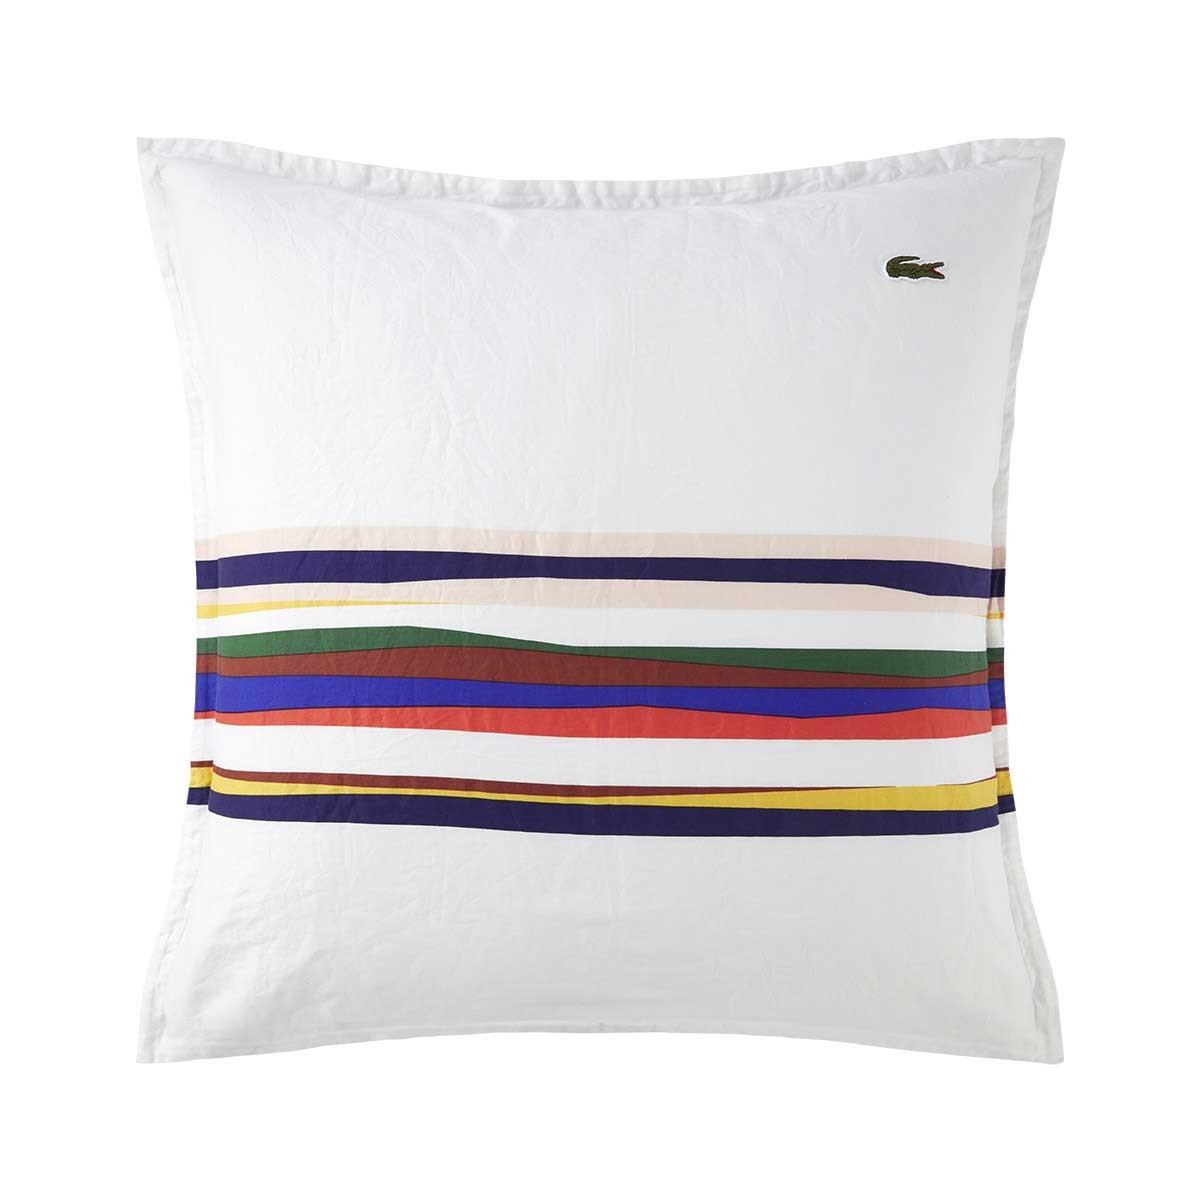 Bed Linen L Socoa  Multicoloured